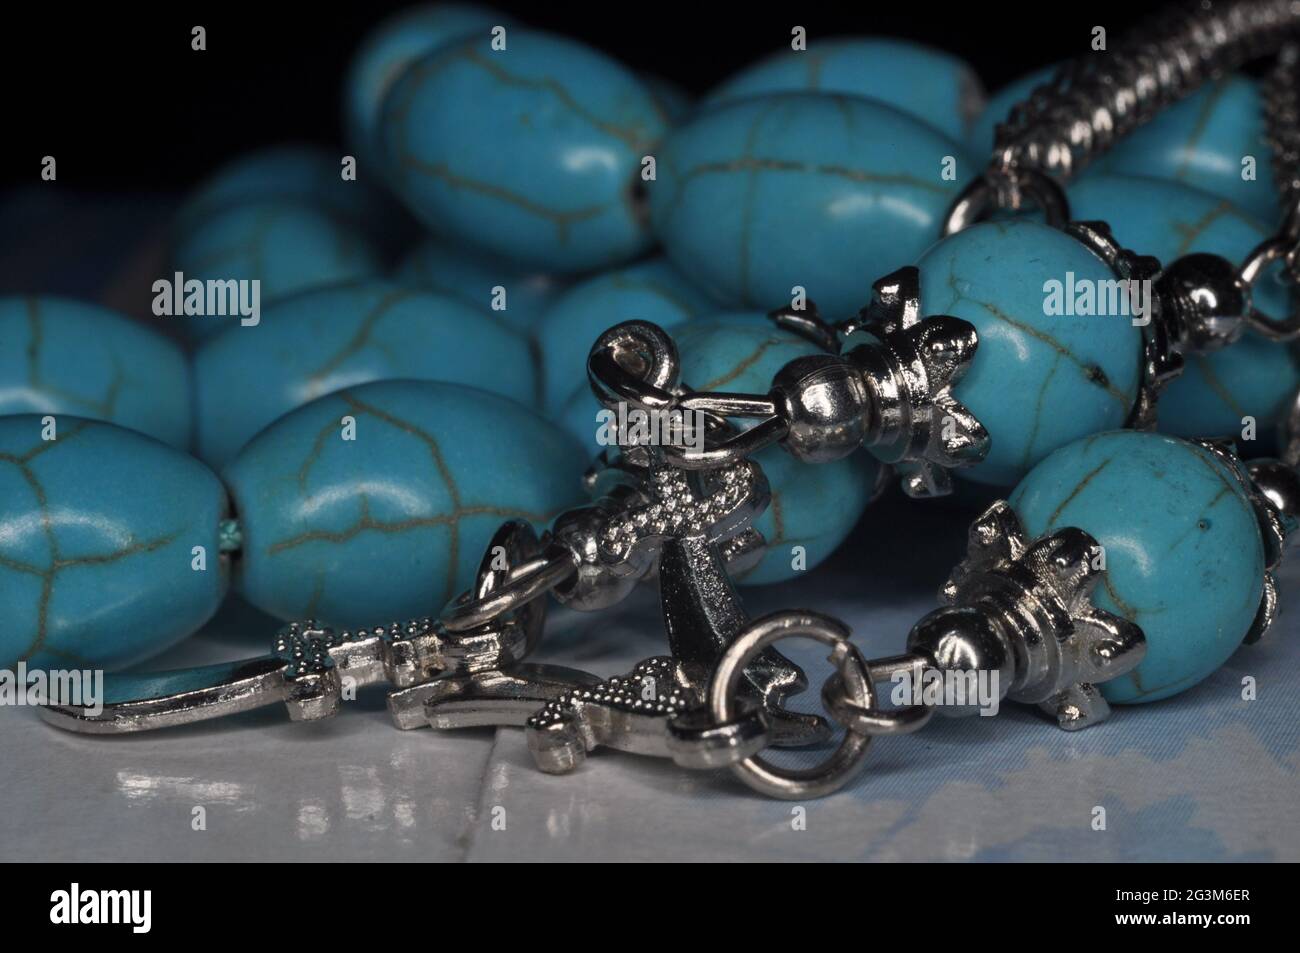 Gros plan de bracelets de perles turquoise sur une surface brillante Banque D'Images